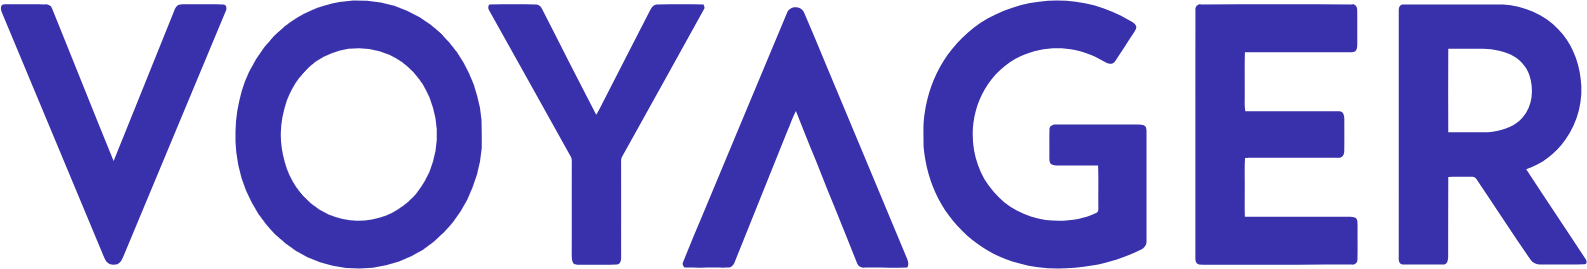 Voyager Digital logo large (transparent PNG)